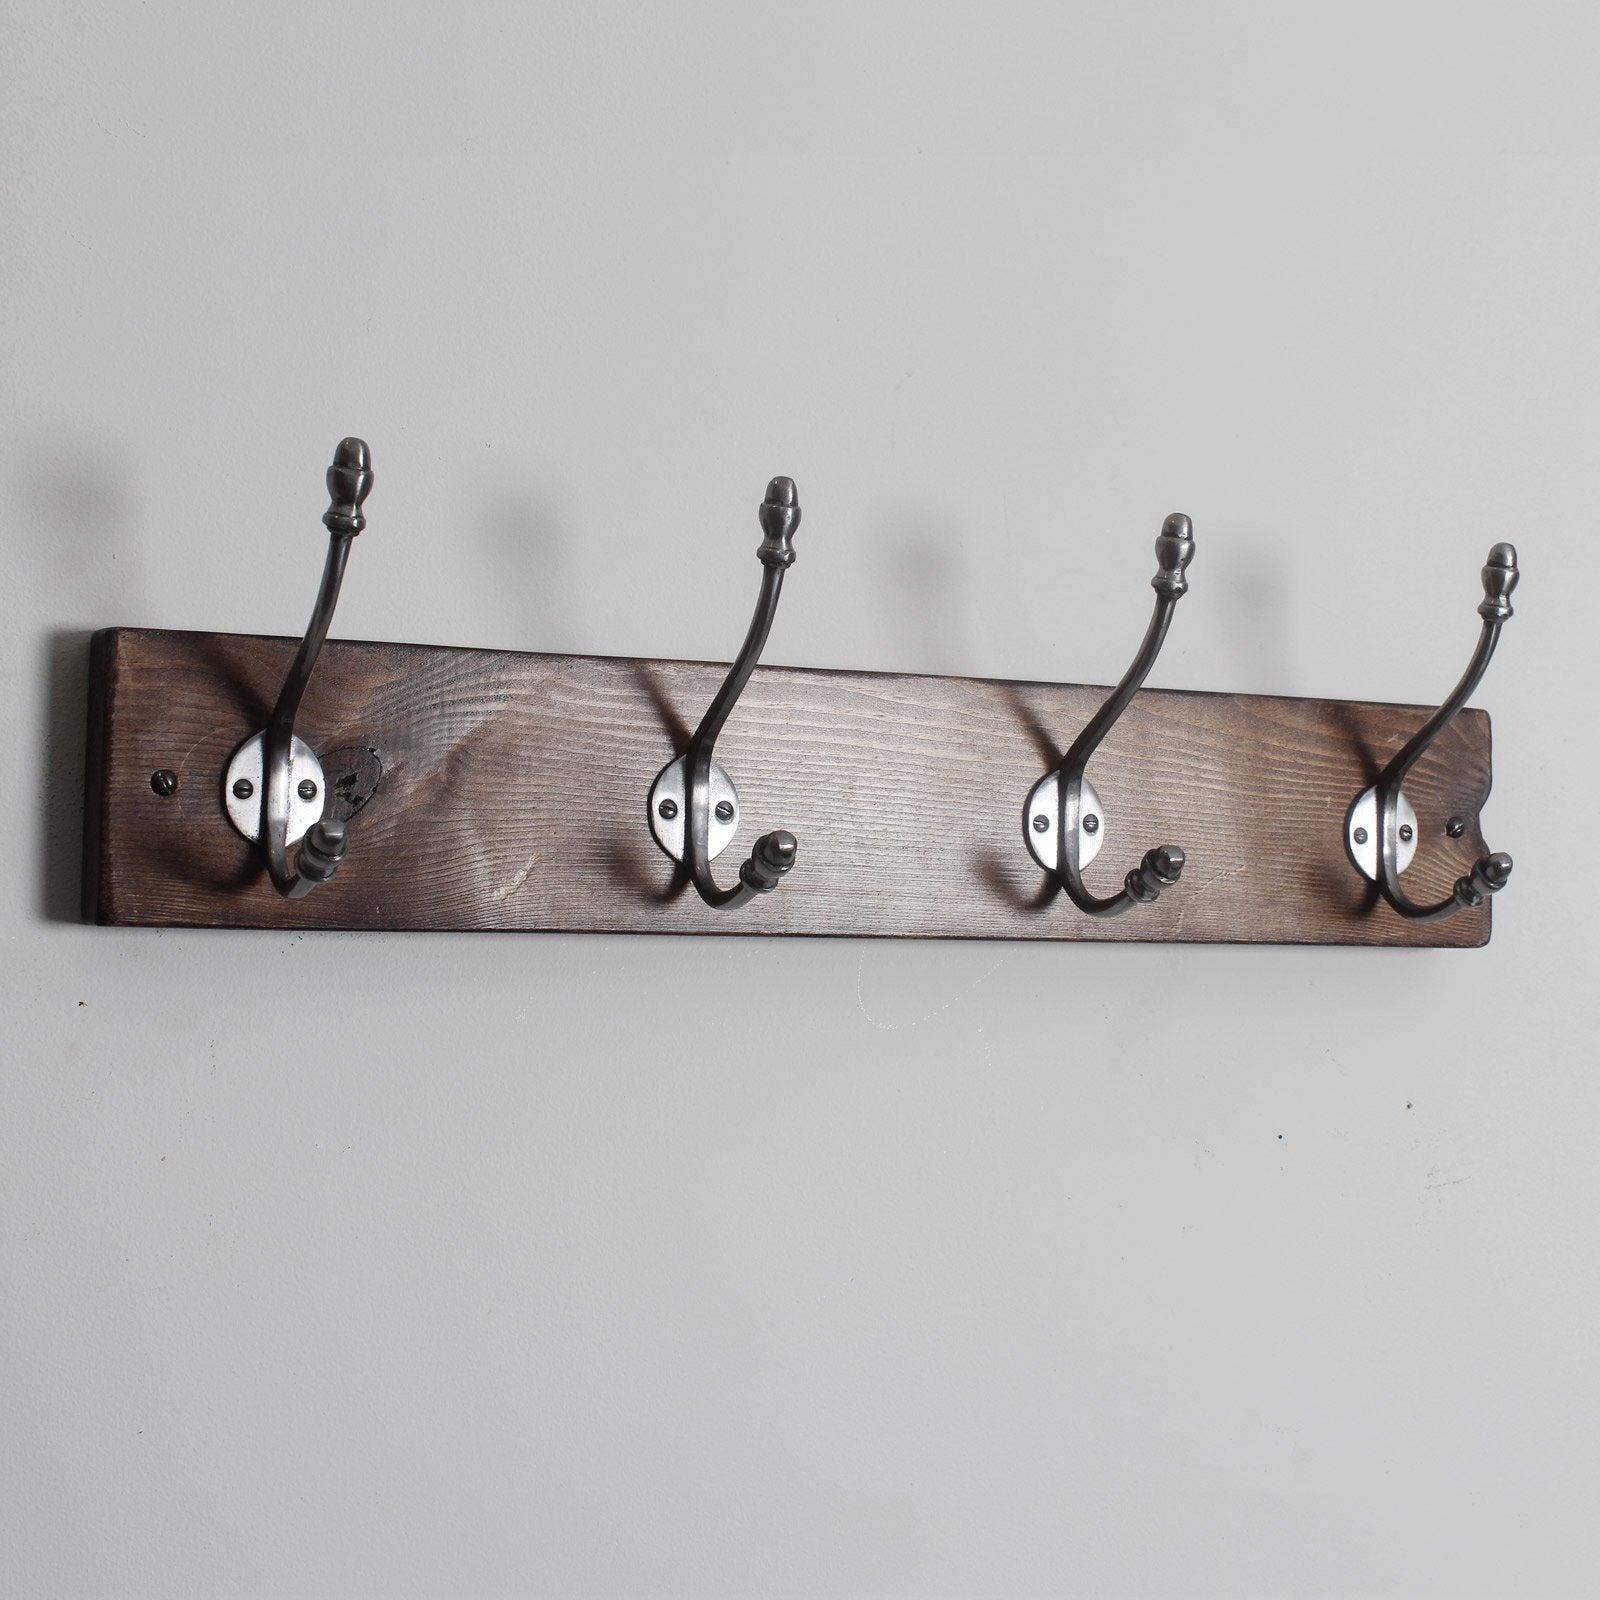 Reclaimed Wooden Hook Board - 2 Hooks - The Workshop